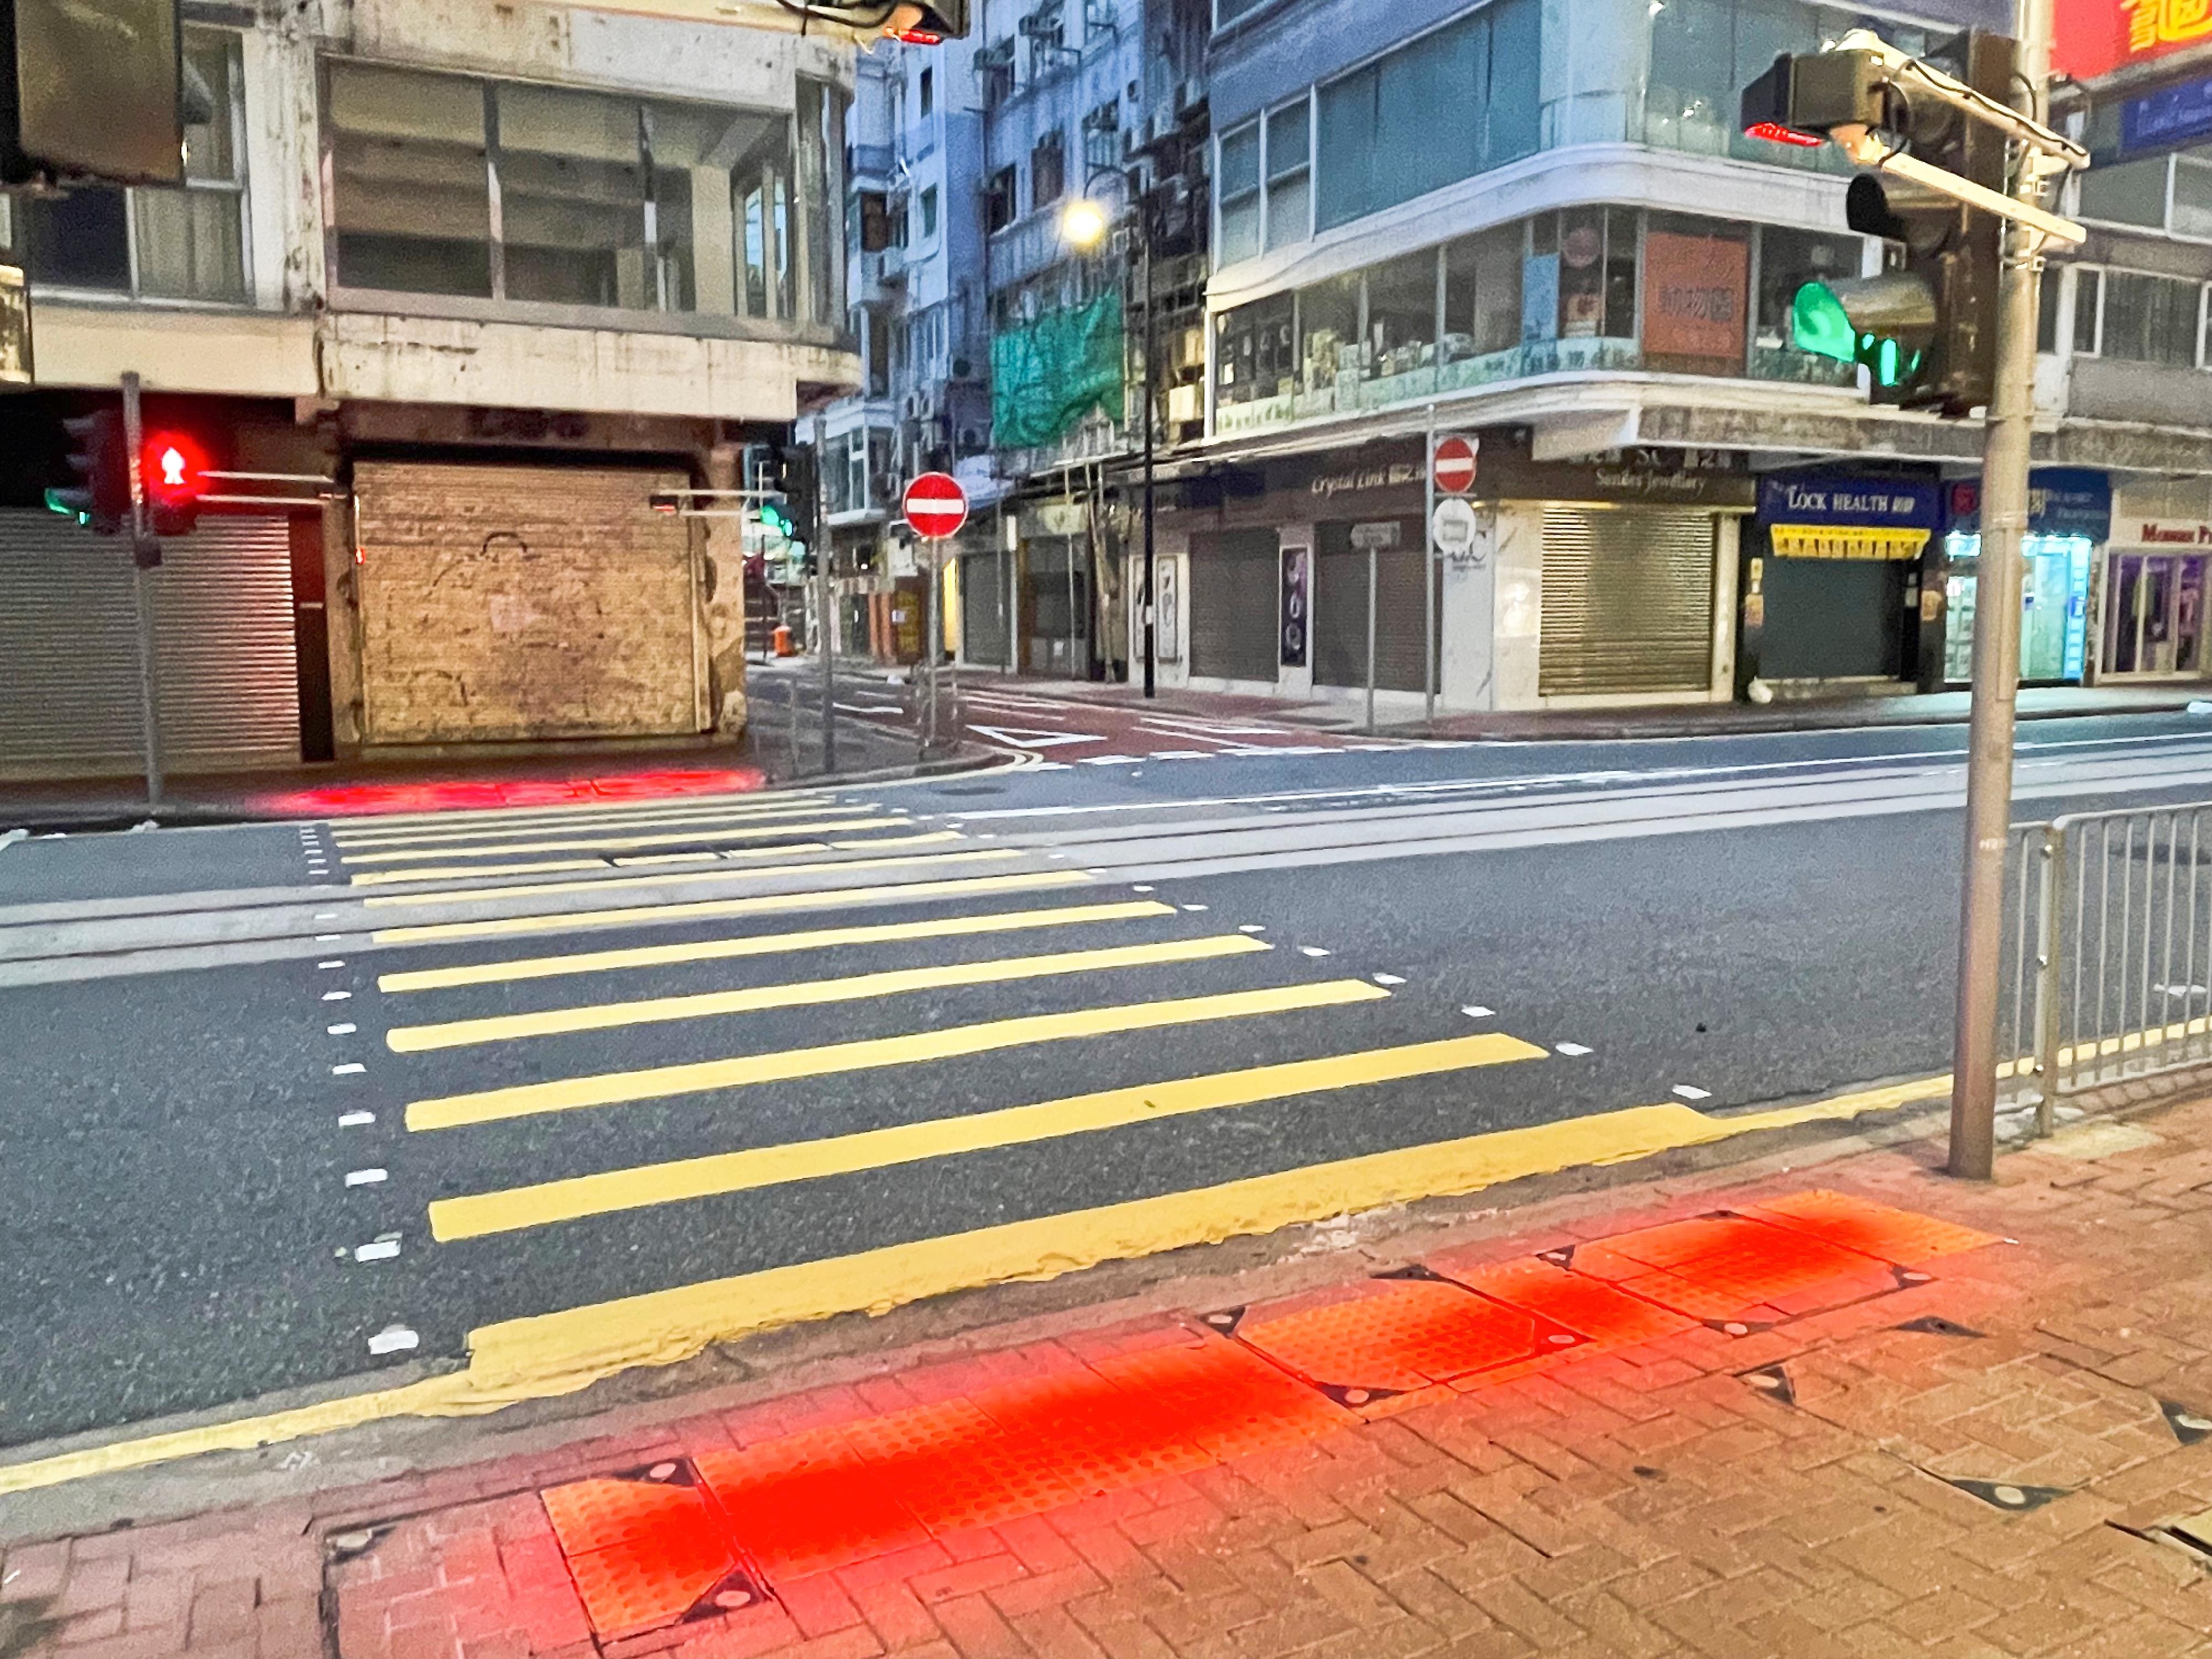 运输署今日（七月五日）表示，署方在波斯富街／富明街的行人过路处安装辅助装置，提醒行人不可在「红色人像」灯号亮着时横过马路，以加强行人安全意识。